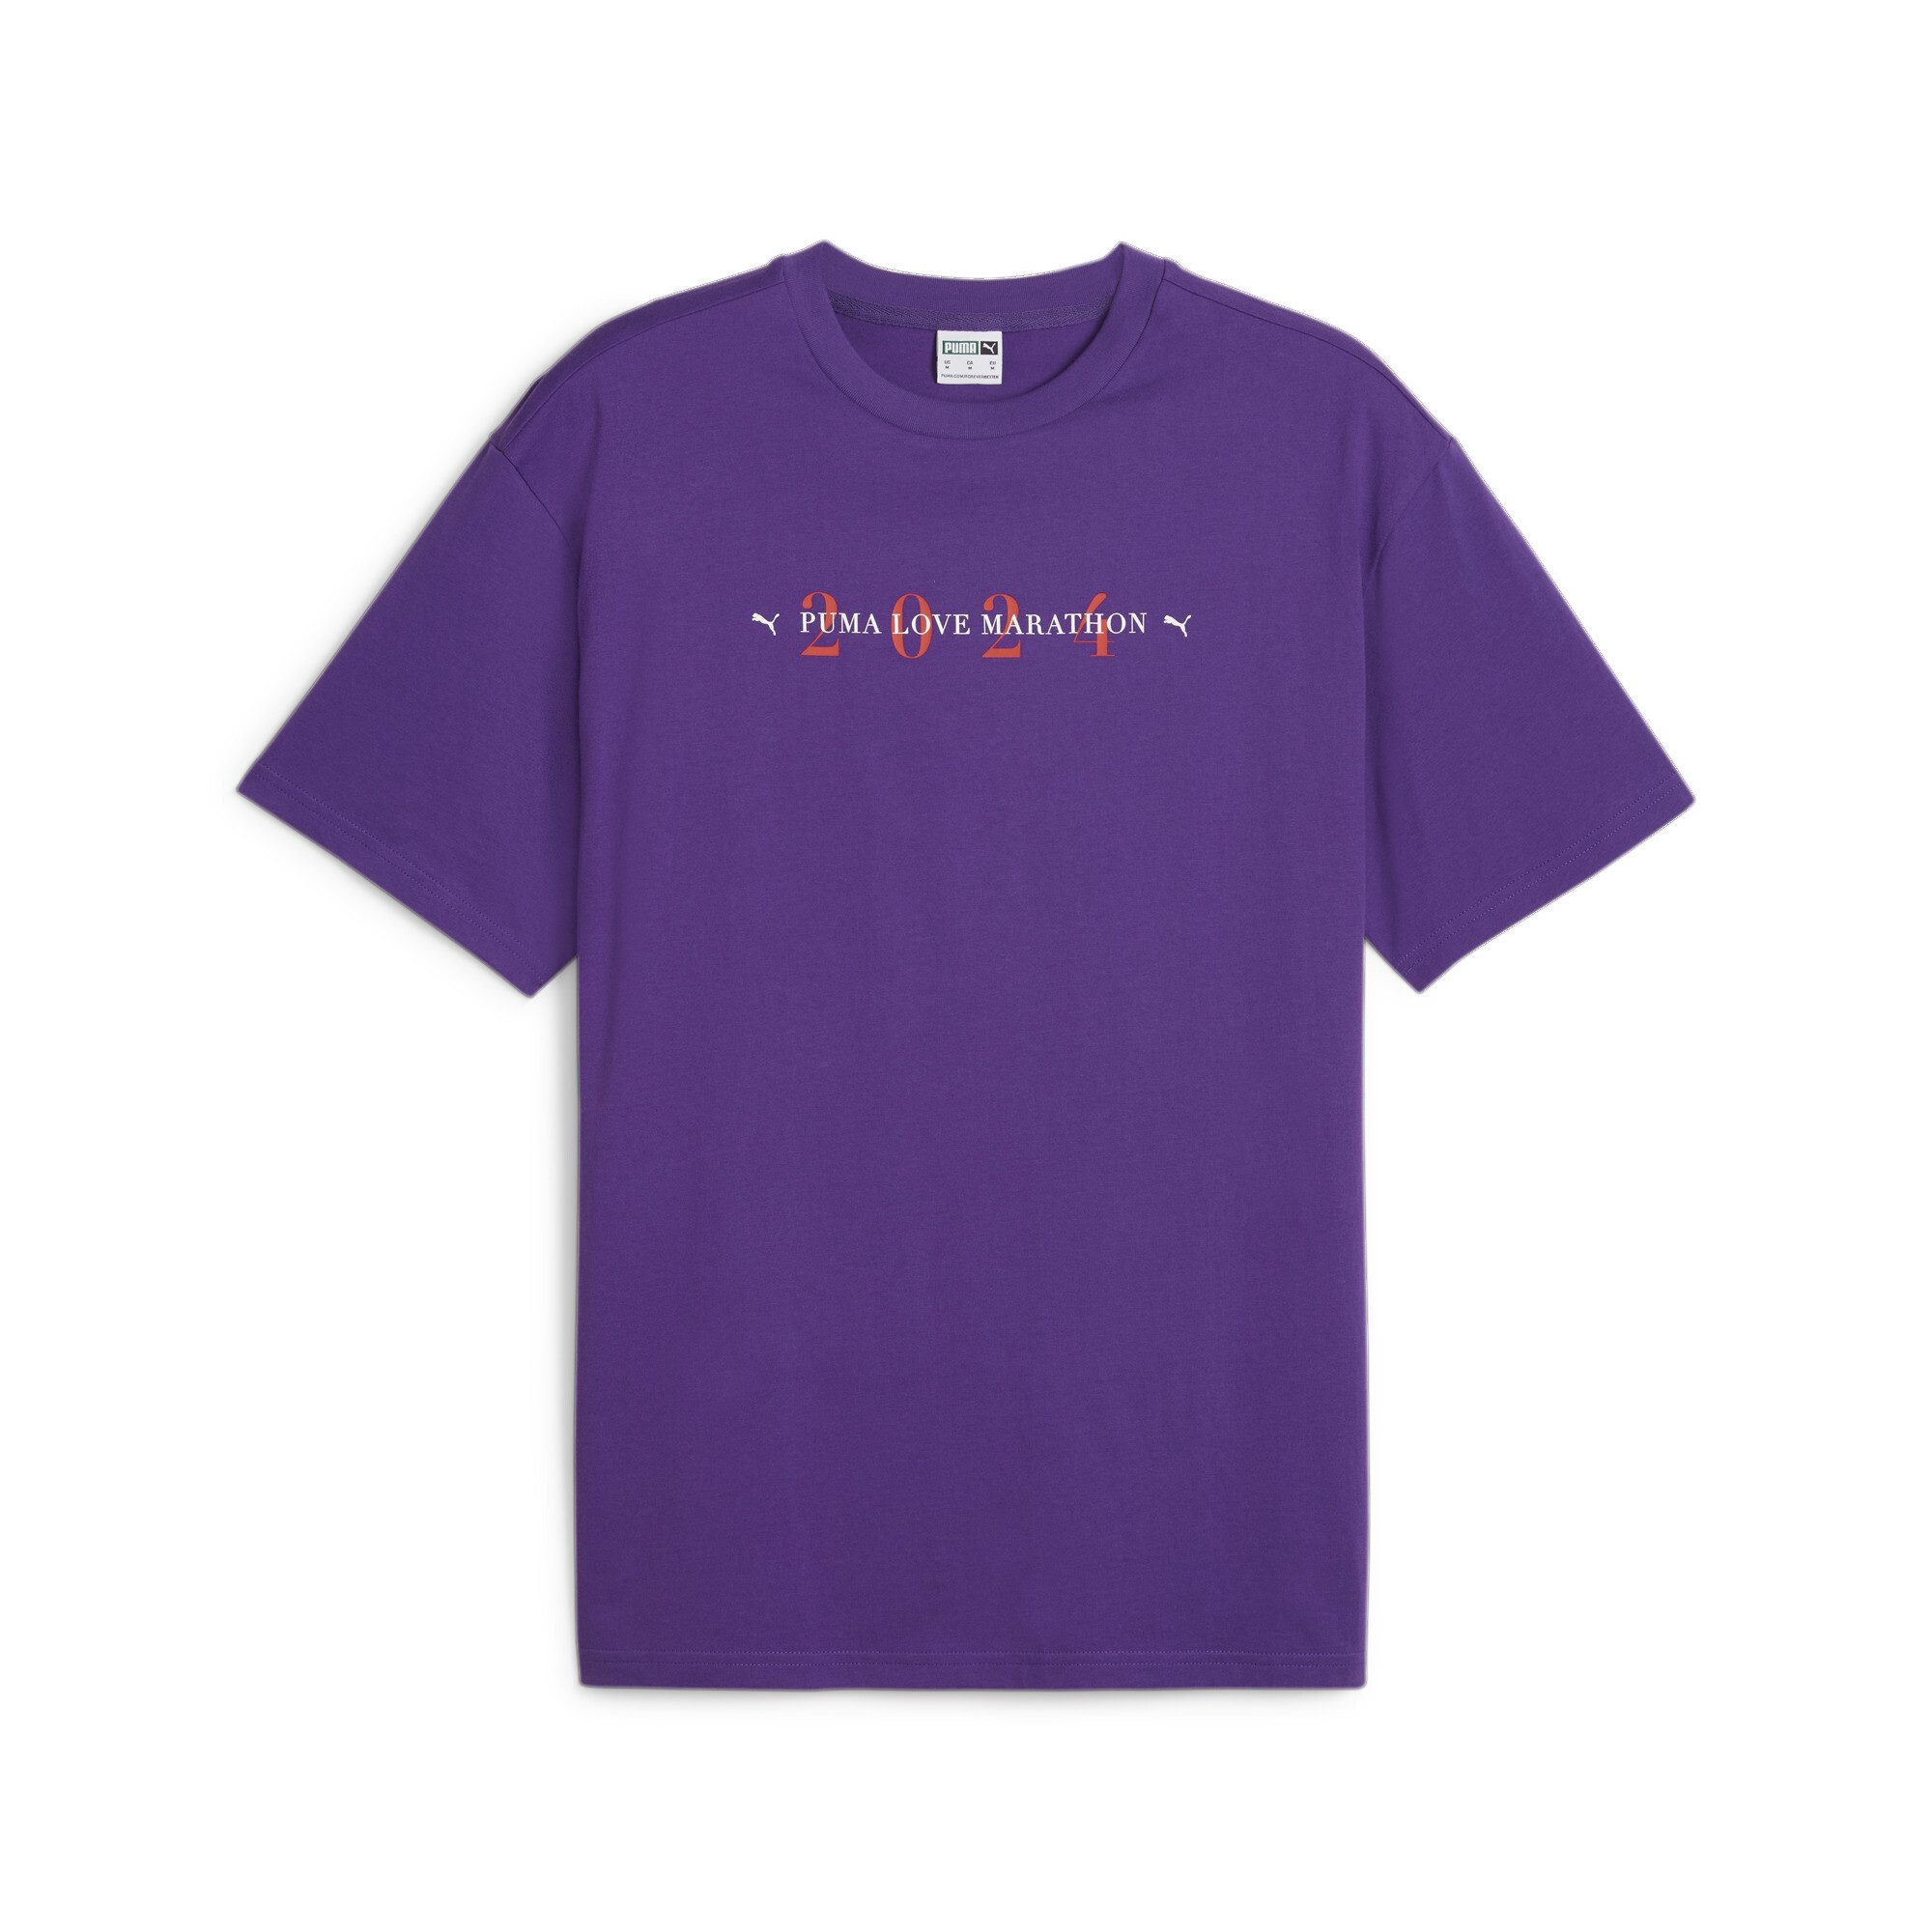 PUMA T-Shirt LOVE MARATHON Grafik-T-Shirt Erwachsene